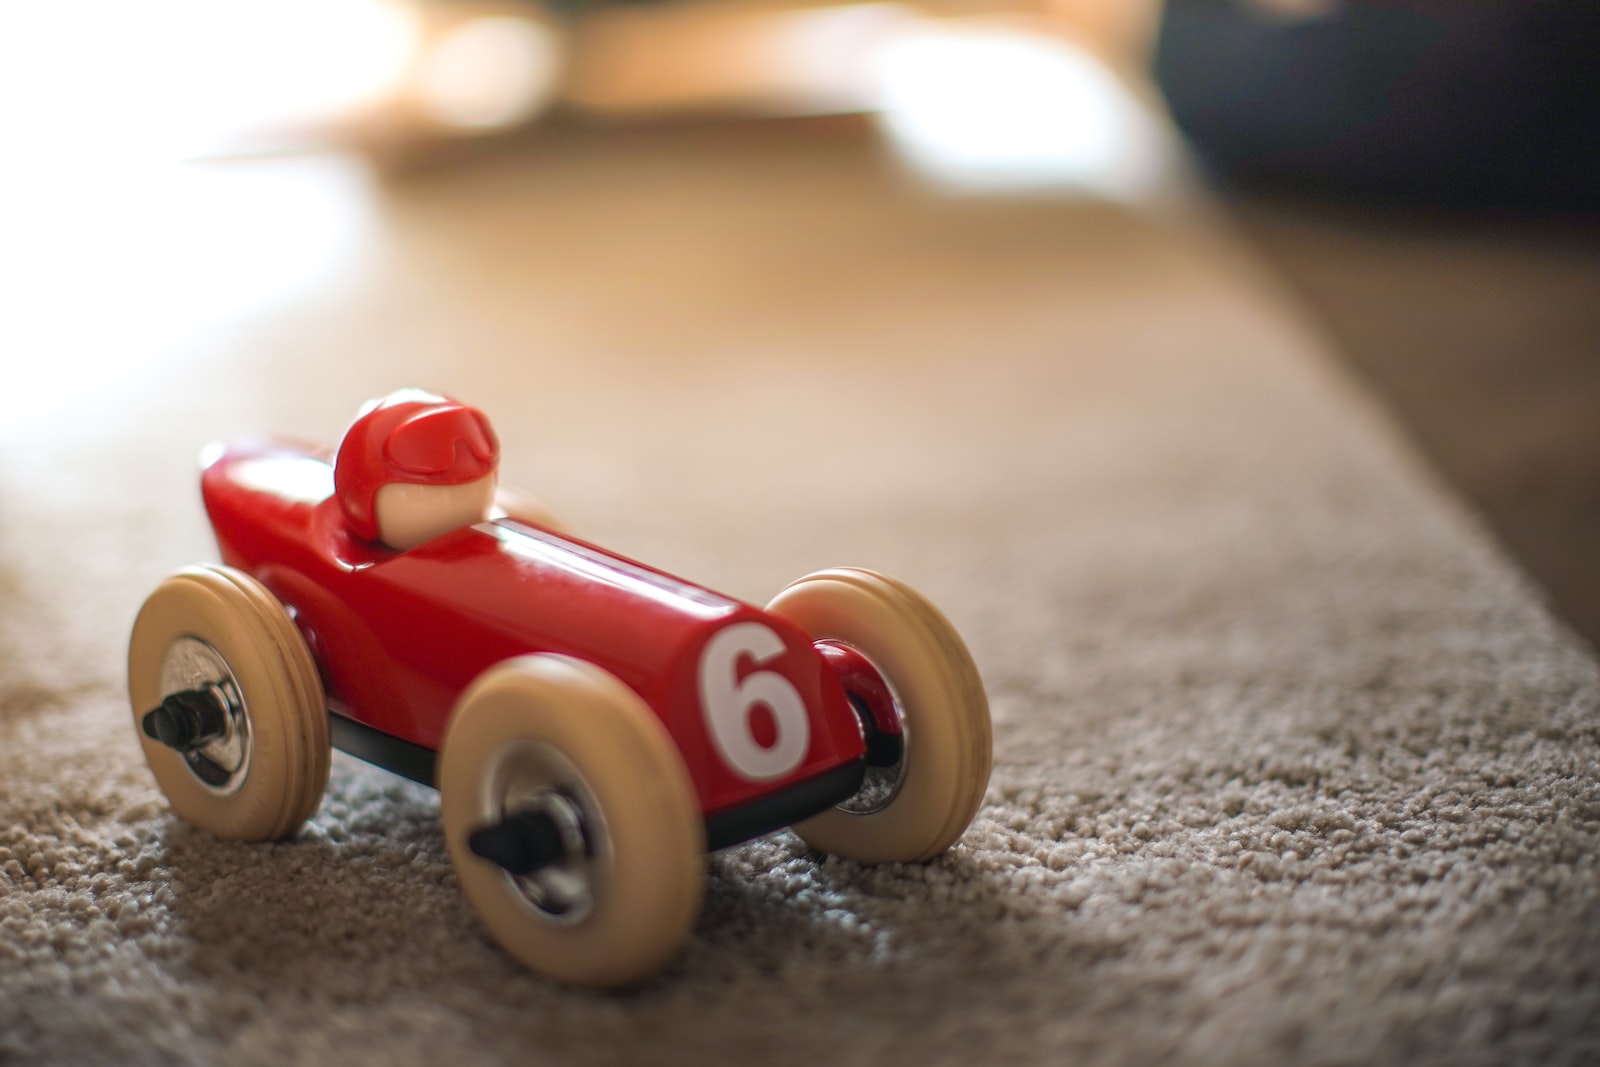 Garage jouet : comment choisir le plus adapté à son enfant ?